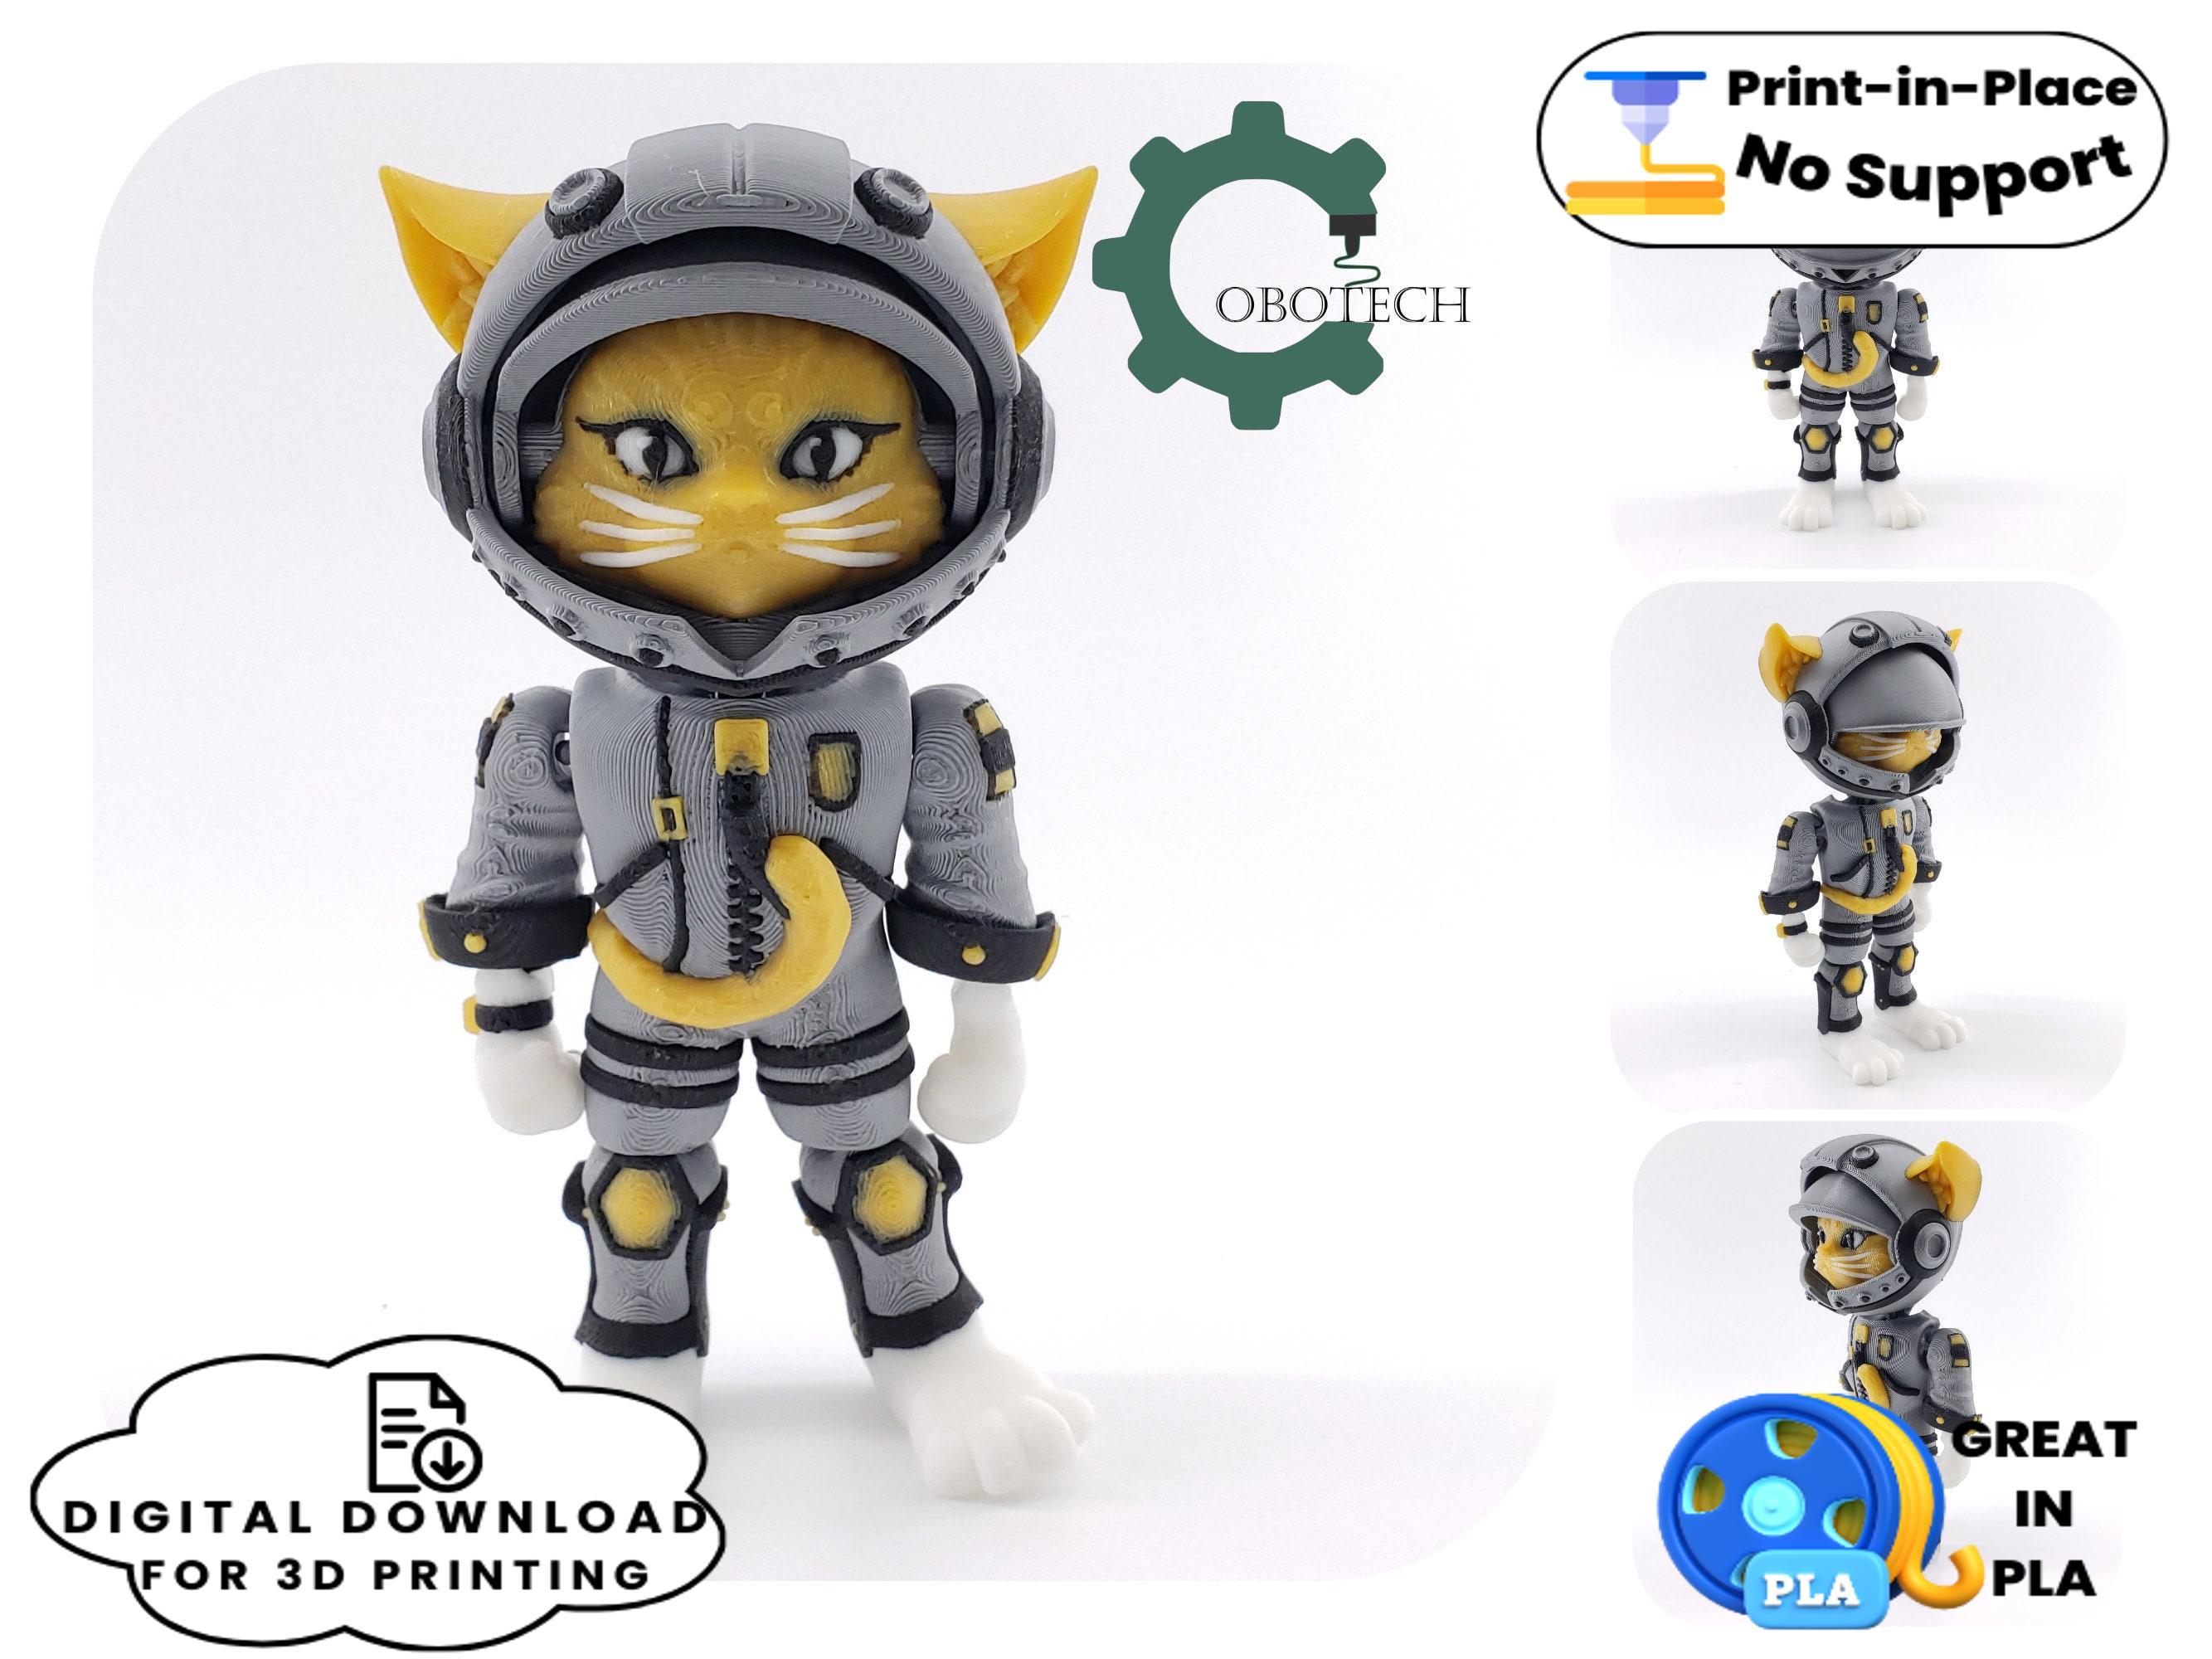 Cobotech Articulated Cat Astronaut 3d model